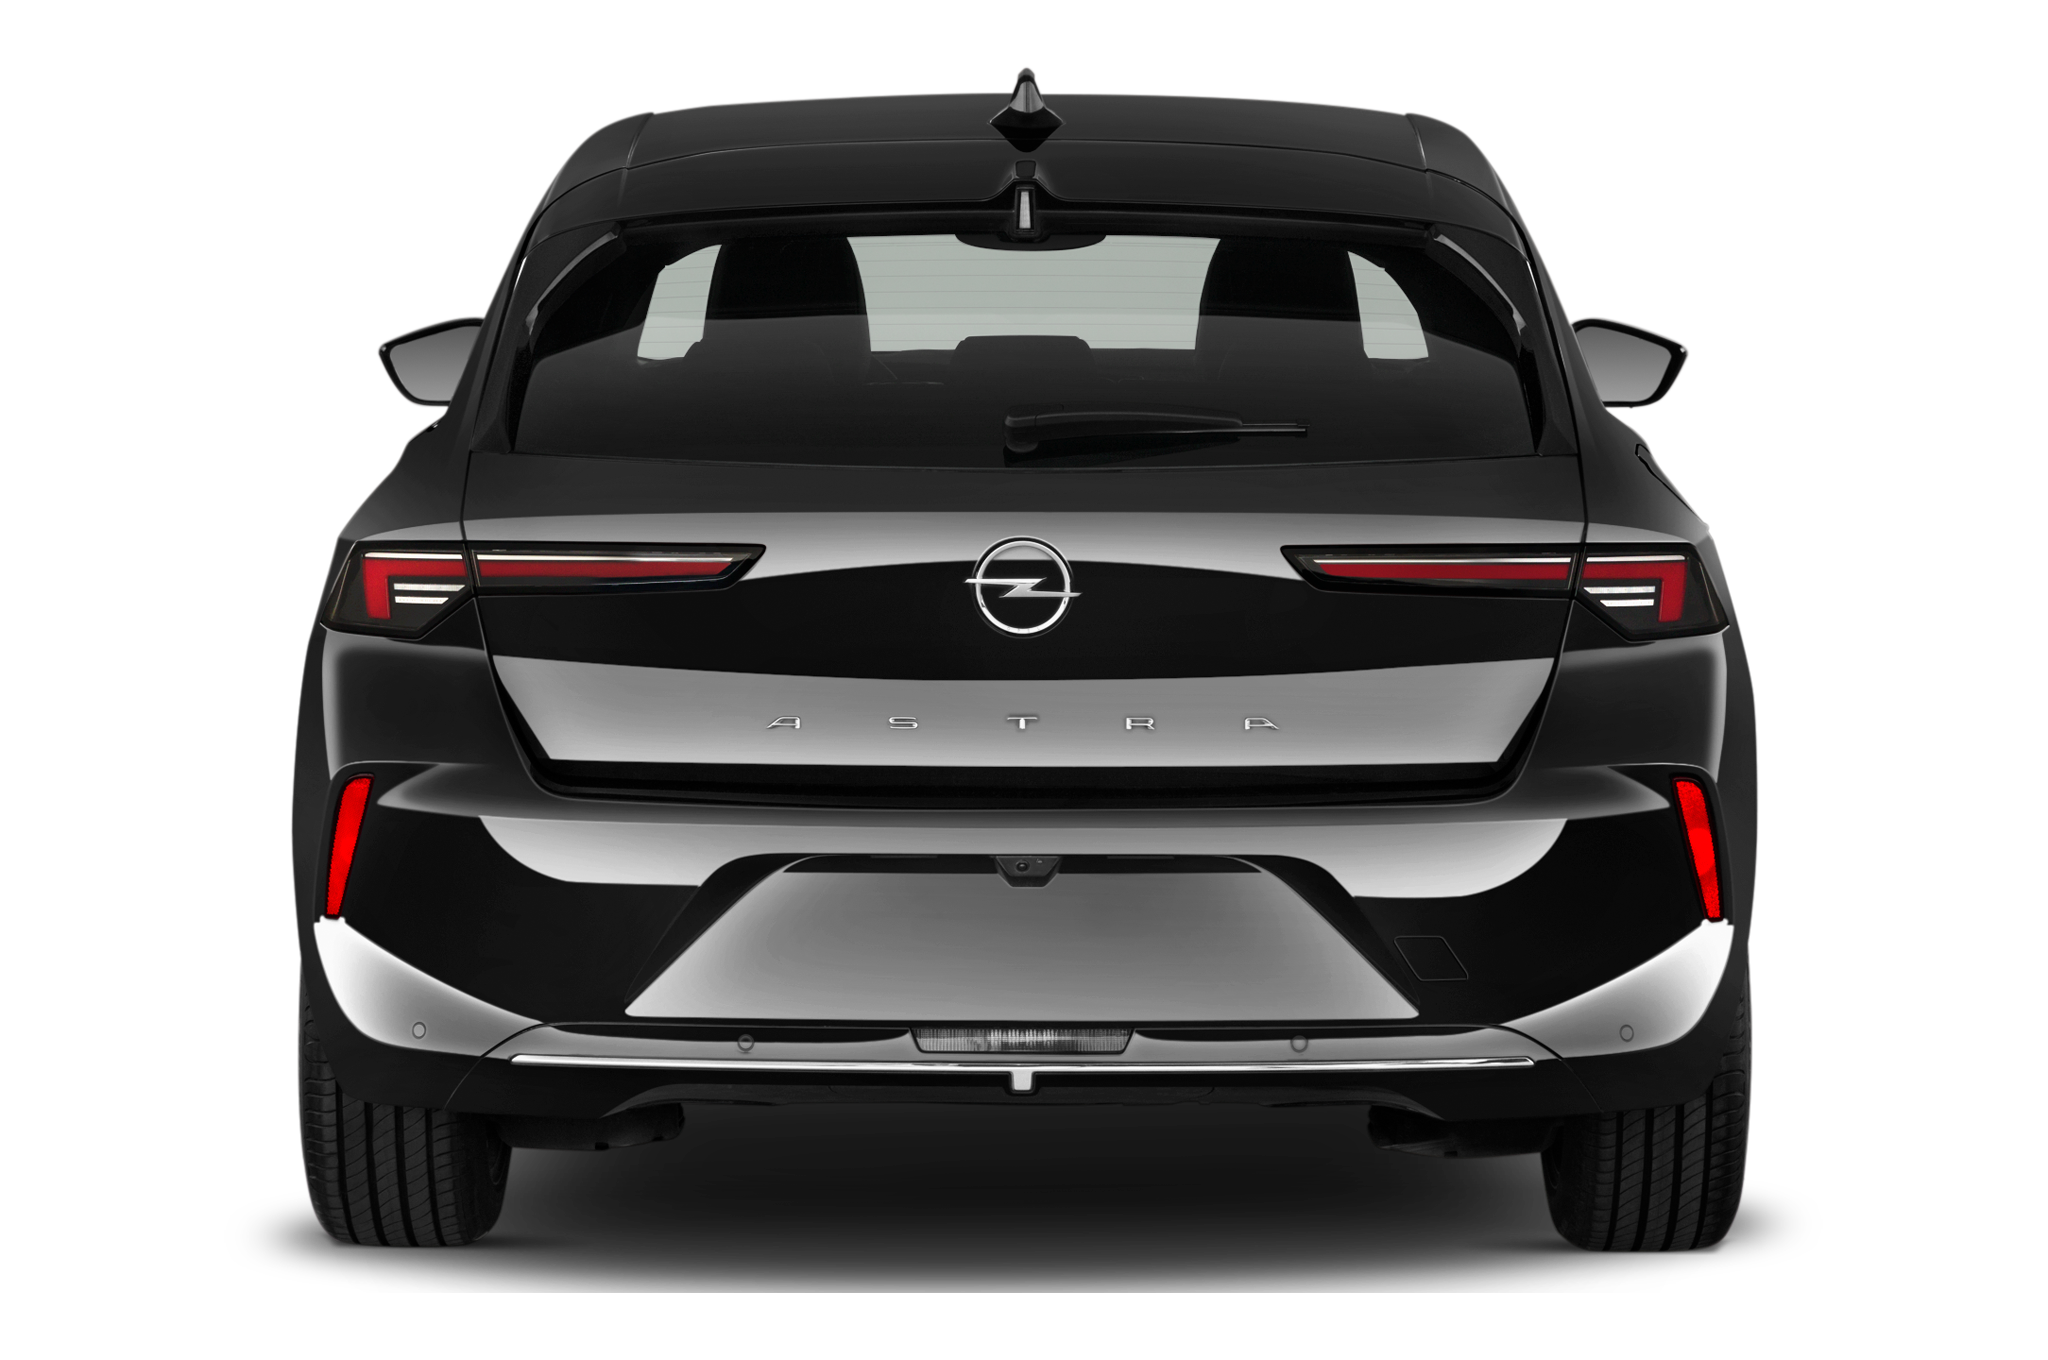 Opel Astra (Baujahr 2023) Enjoy 5 Türen Heckansicht